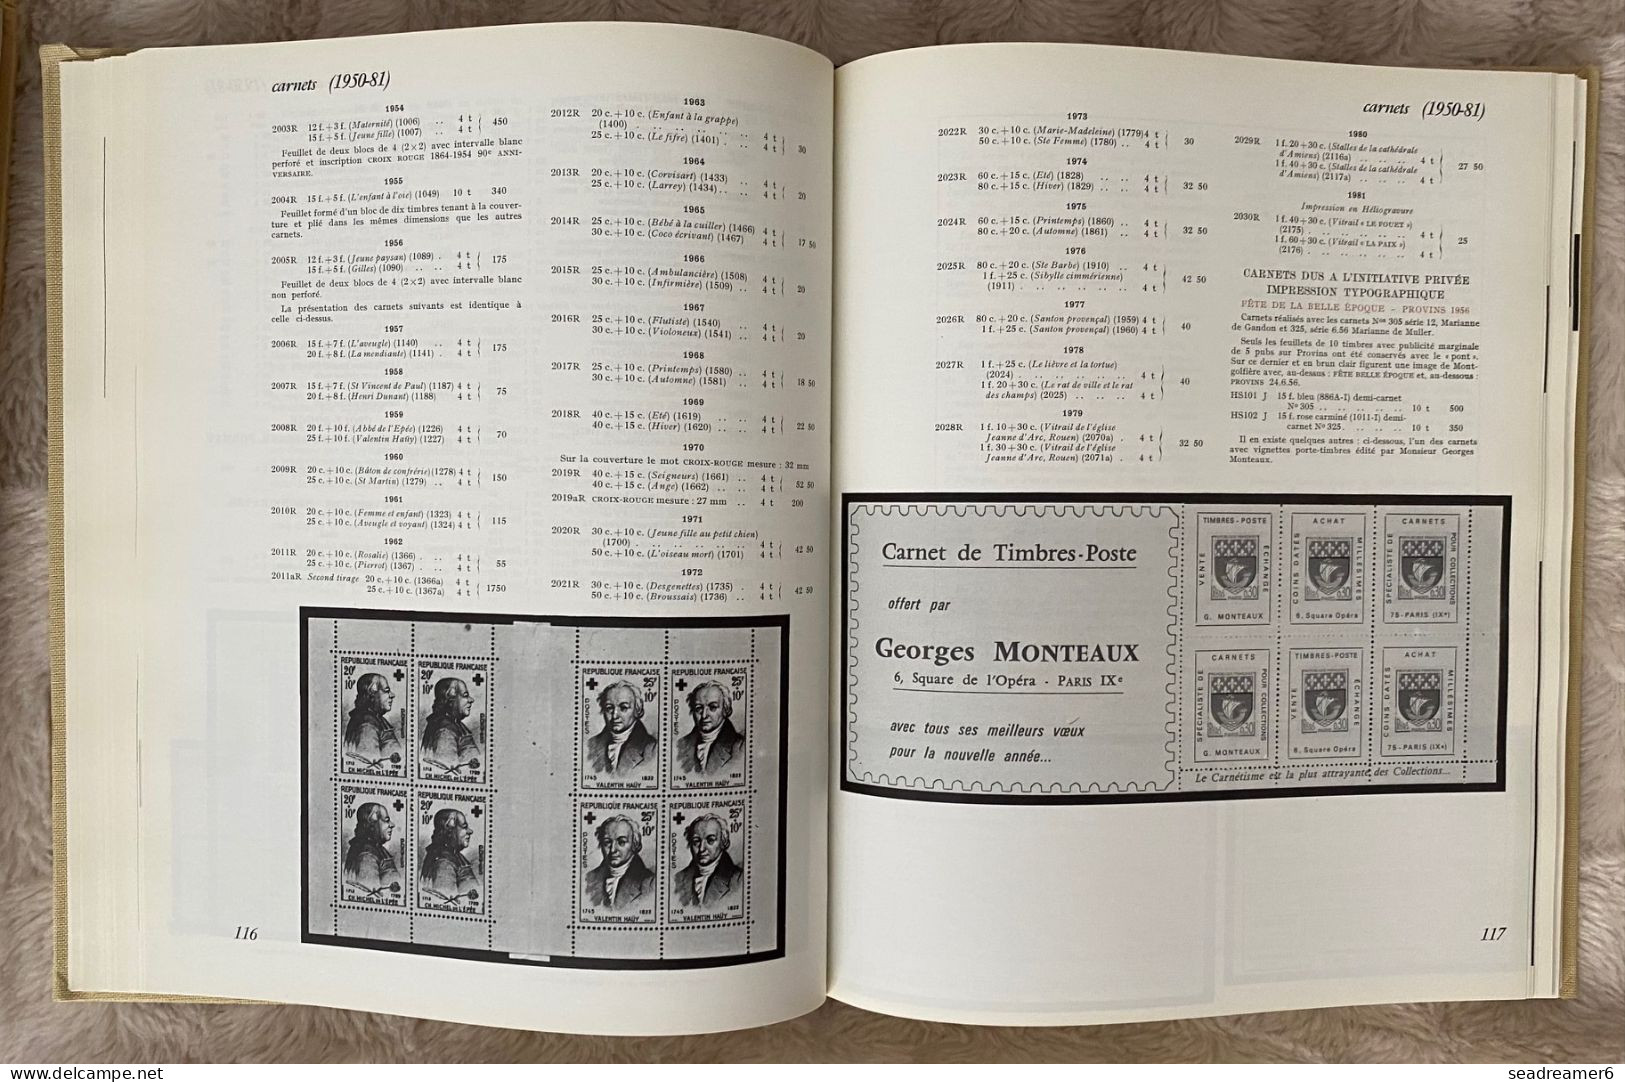 France Catalogue YVERT Spécialisé 1975 TOME 1 & 2 les meilleurs des Yvert  !! parfait état (juste jaquettes abimées)